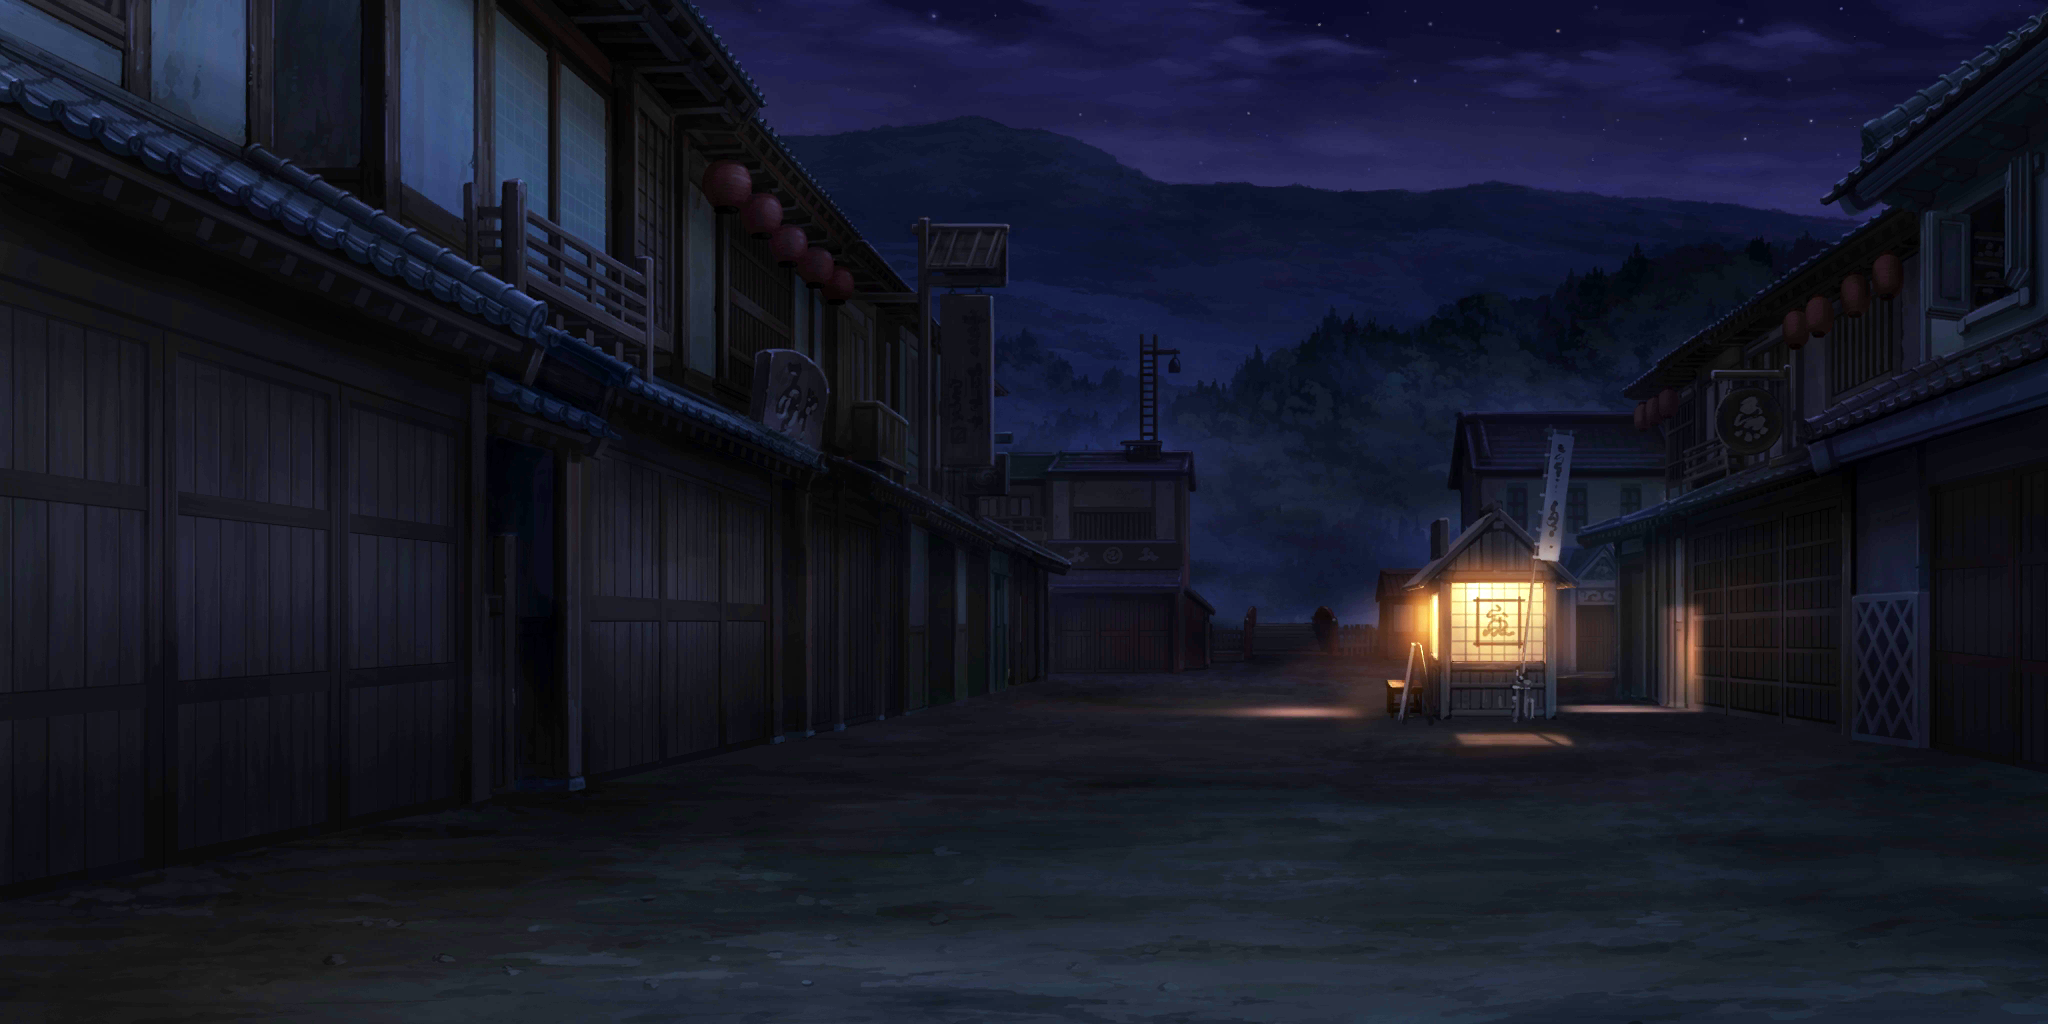 Touhou LostWord - Human Village (Night)